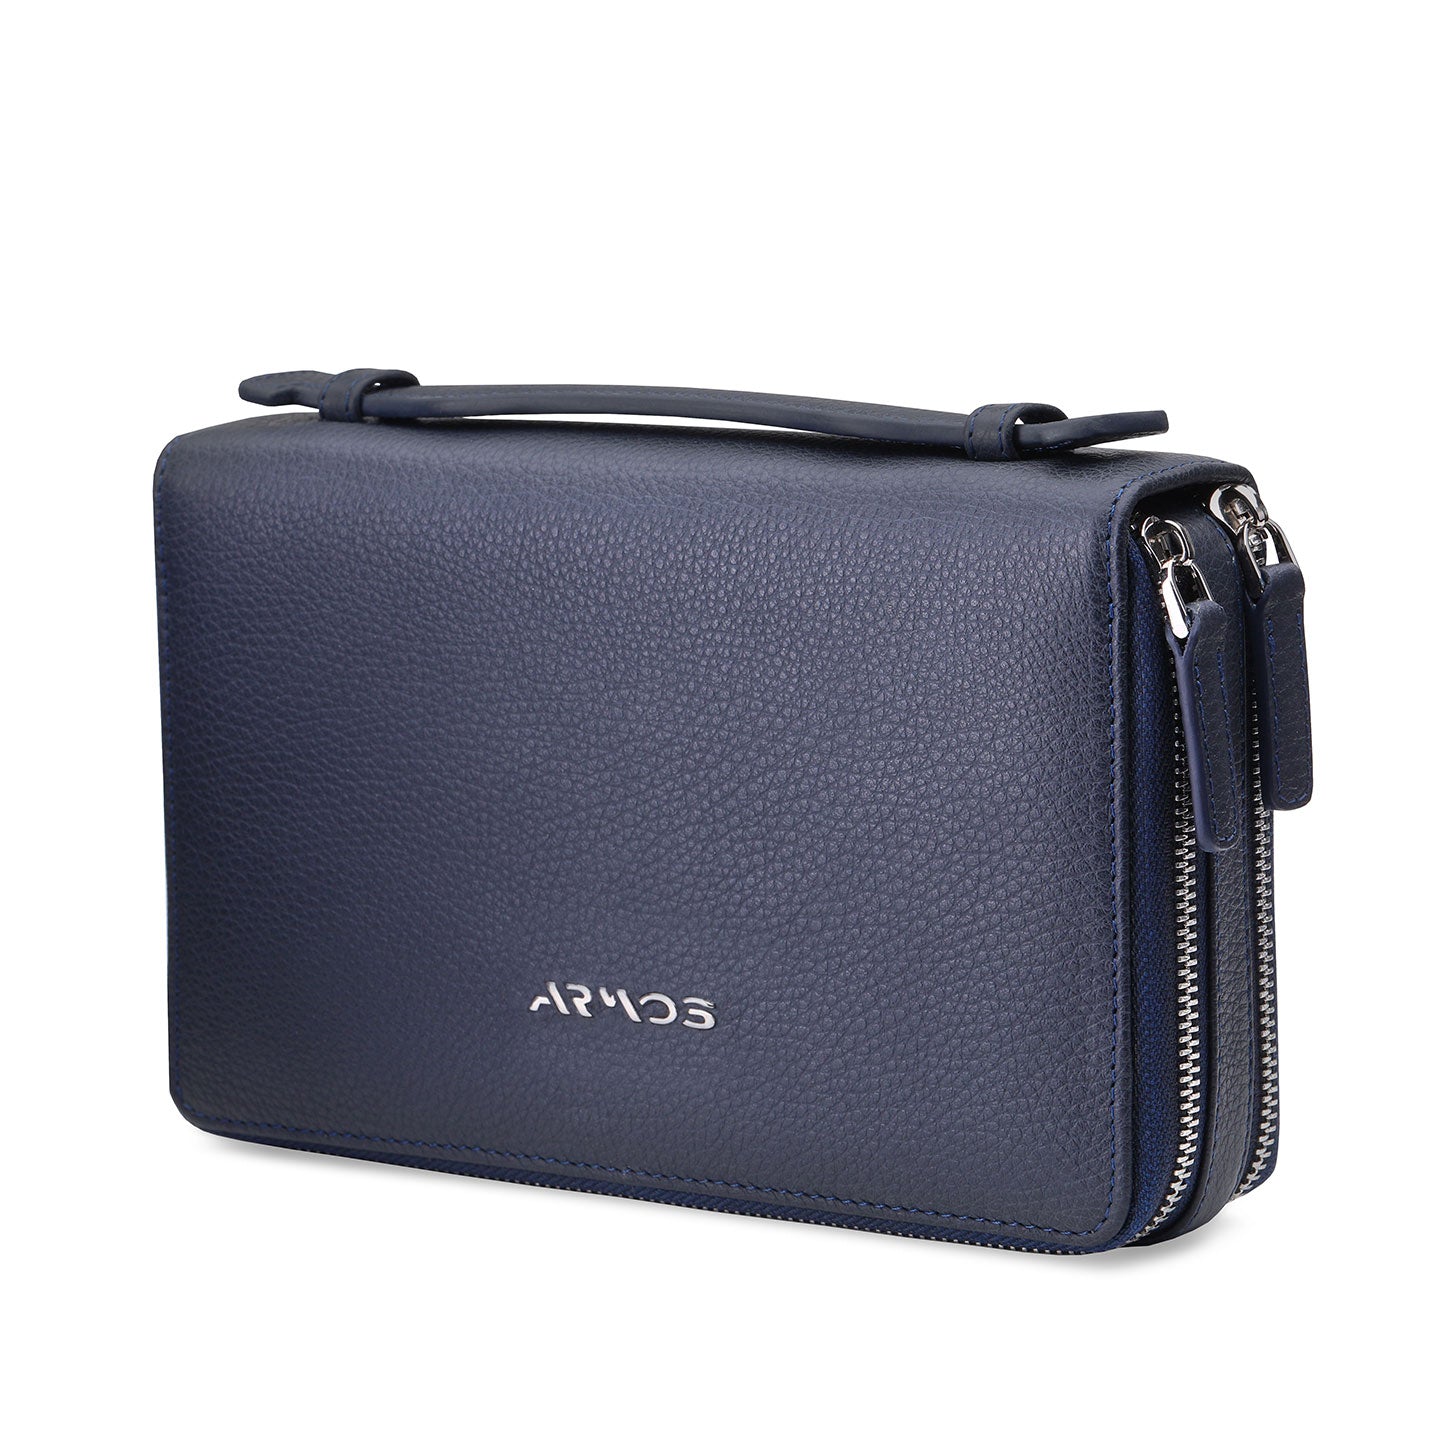 Blue bag - wallet